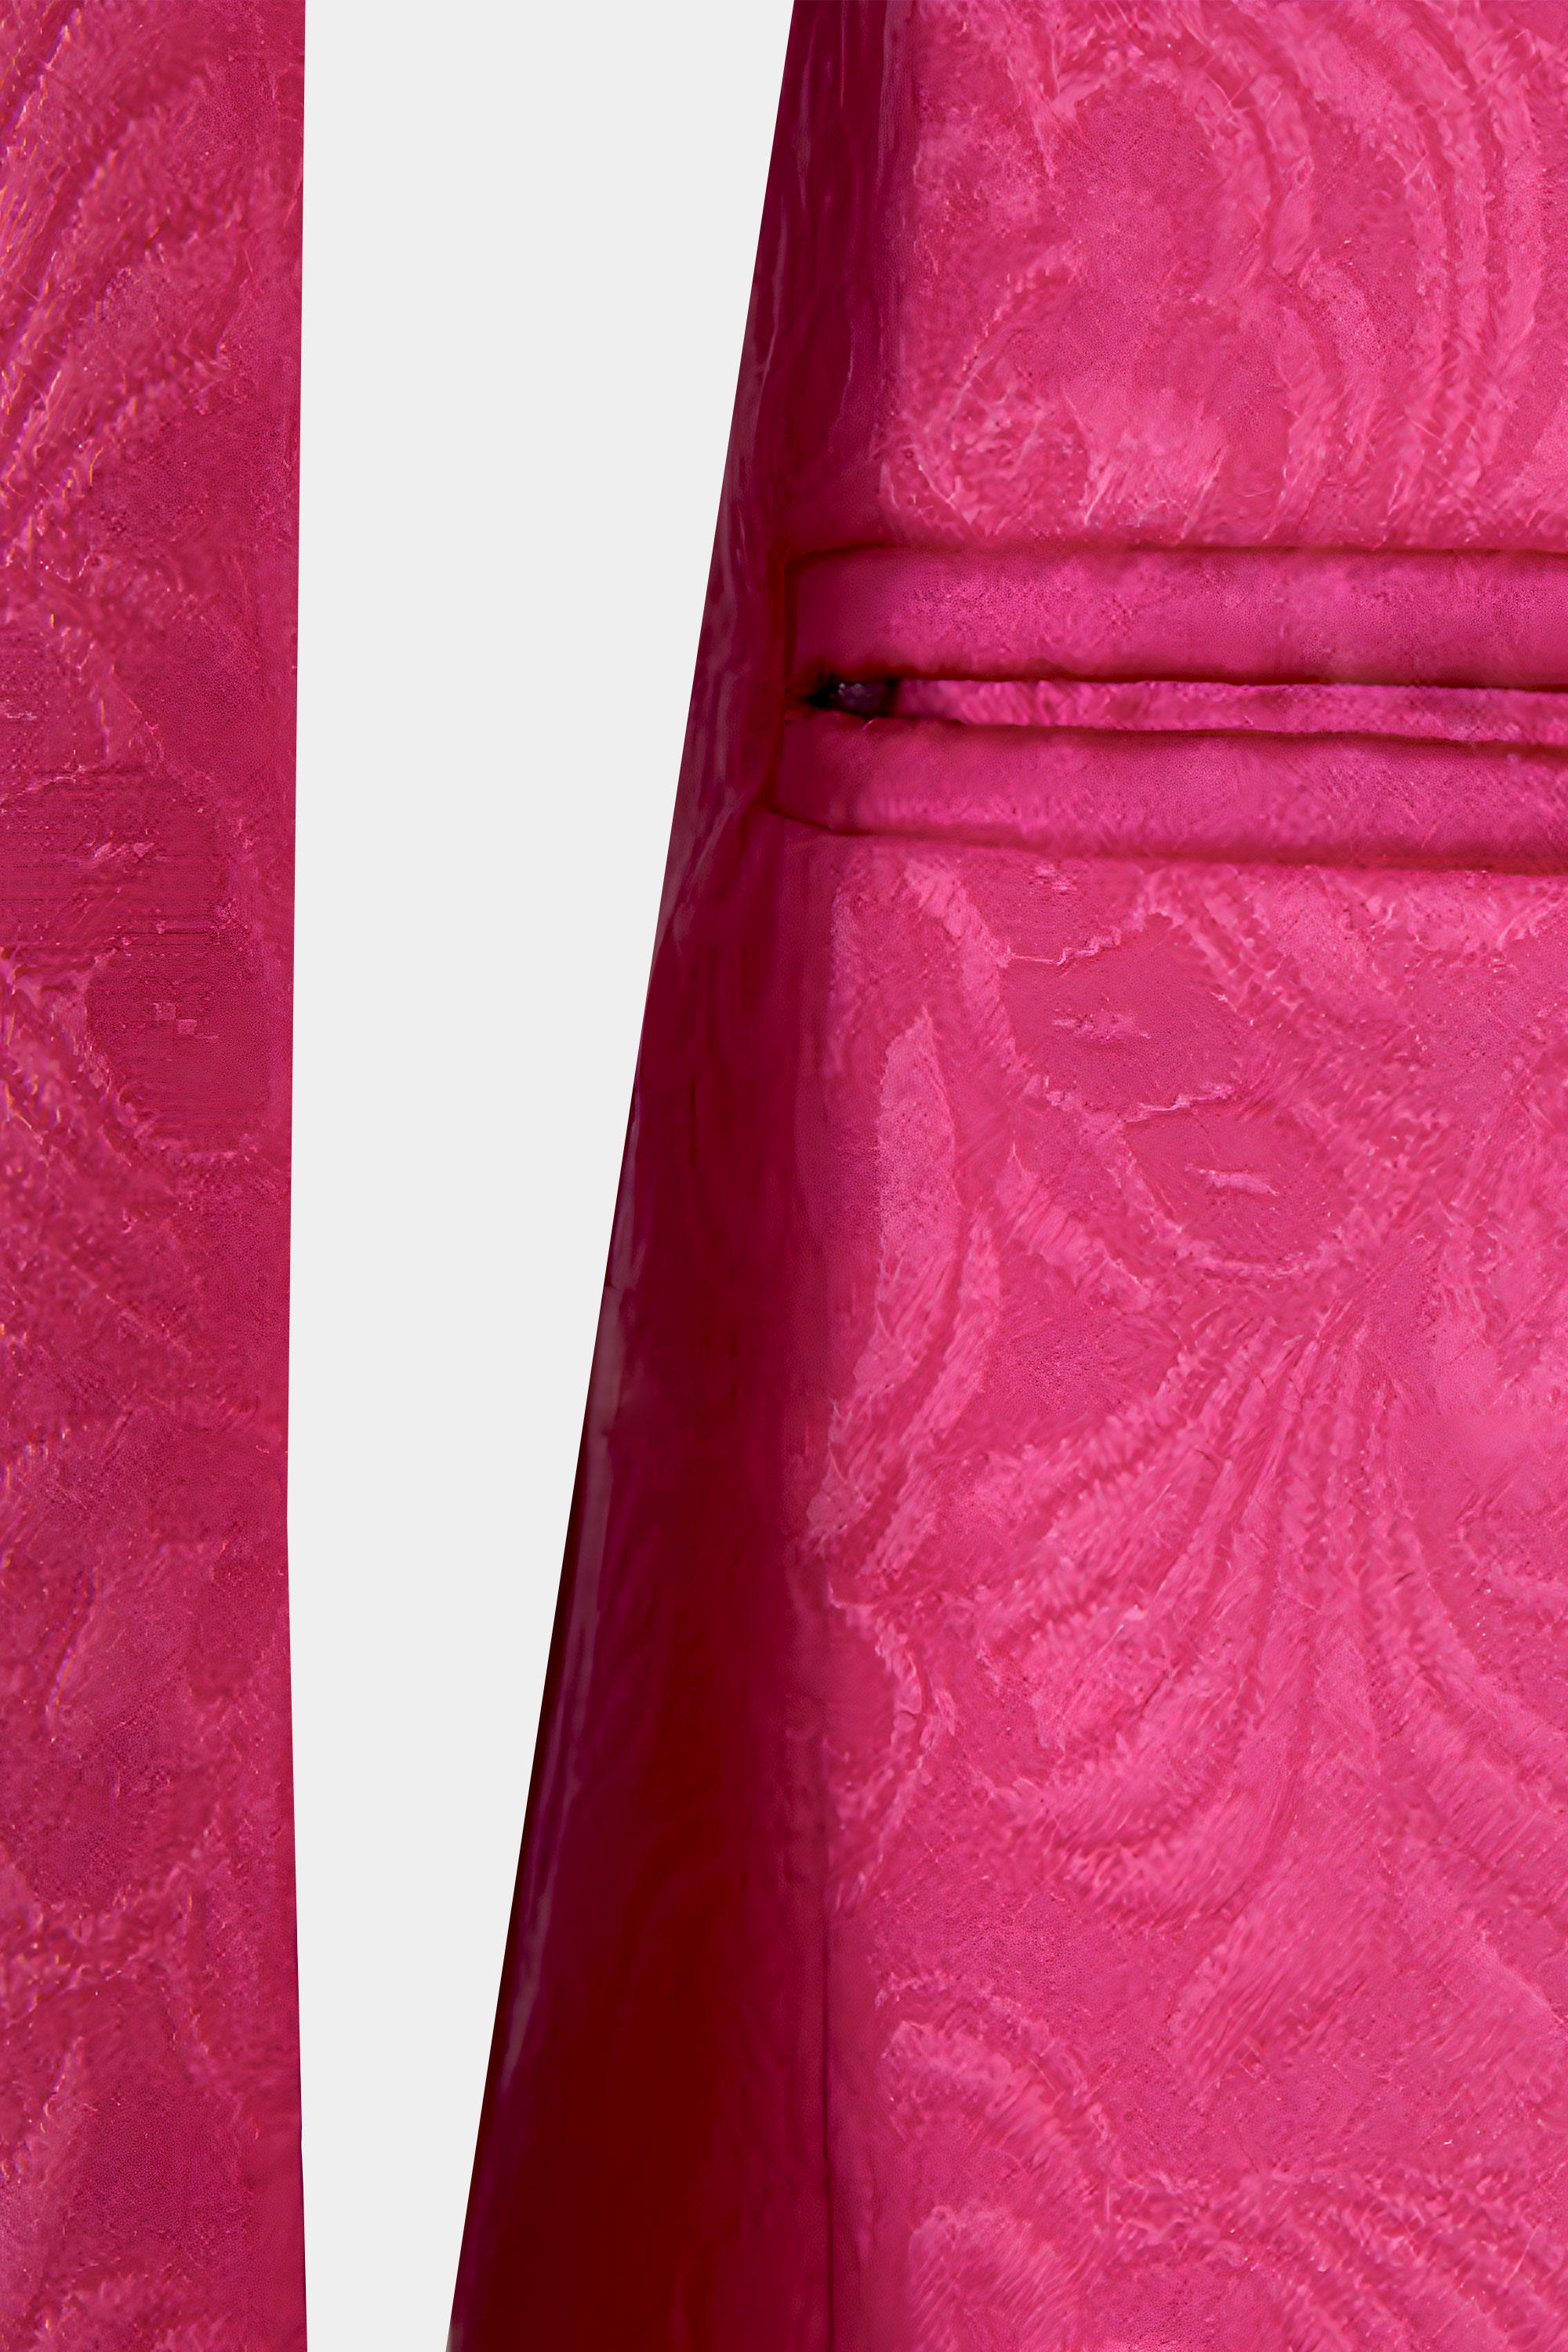 All-Pink-Tuxedo-Pocket-from-Gentlemansguru.com